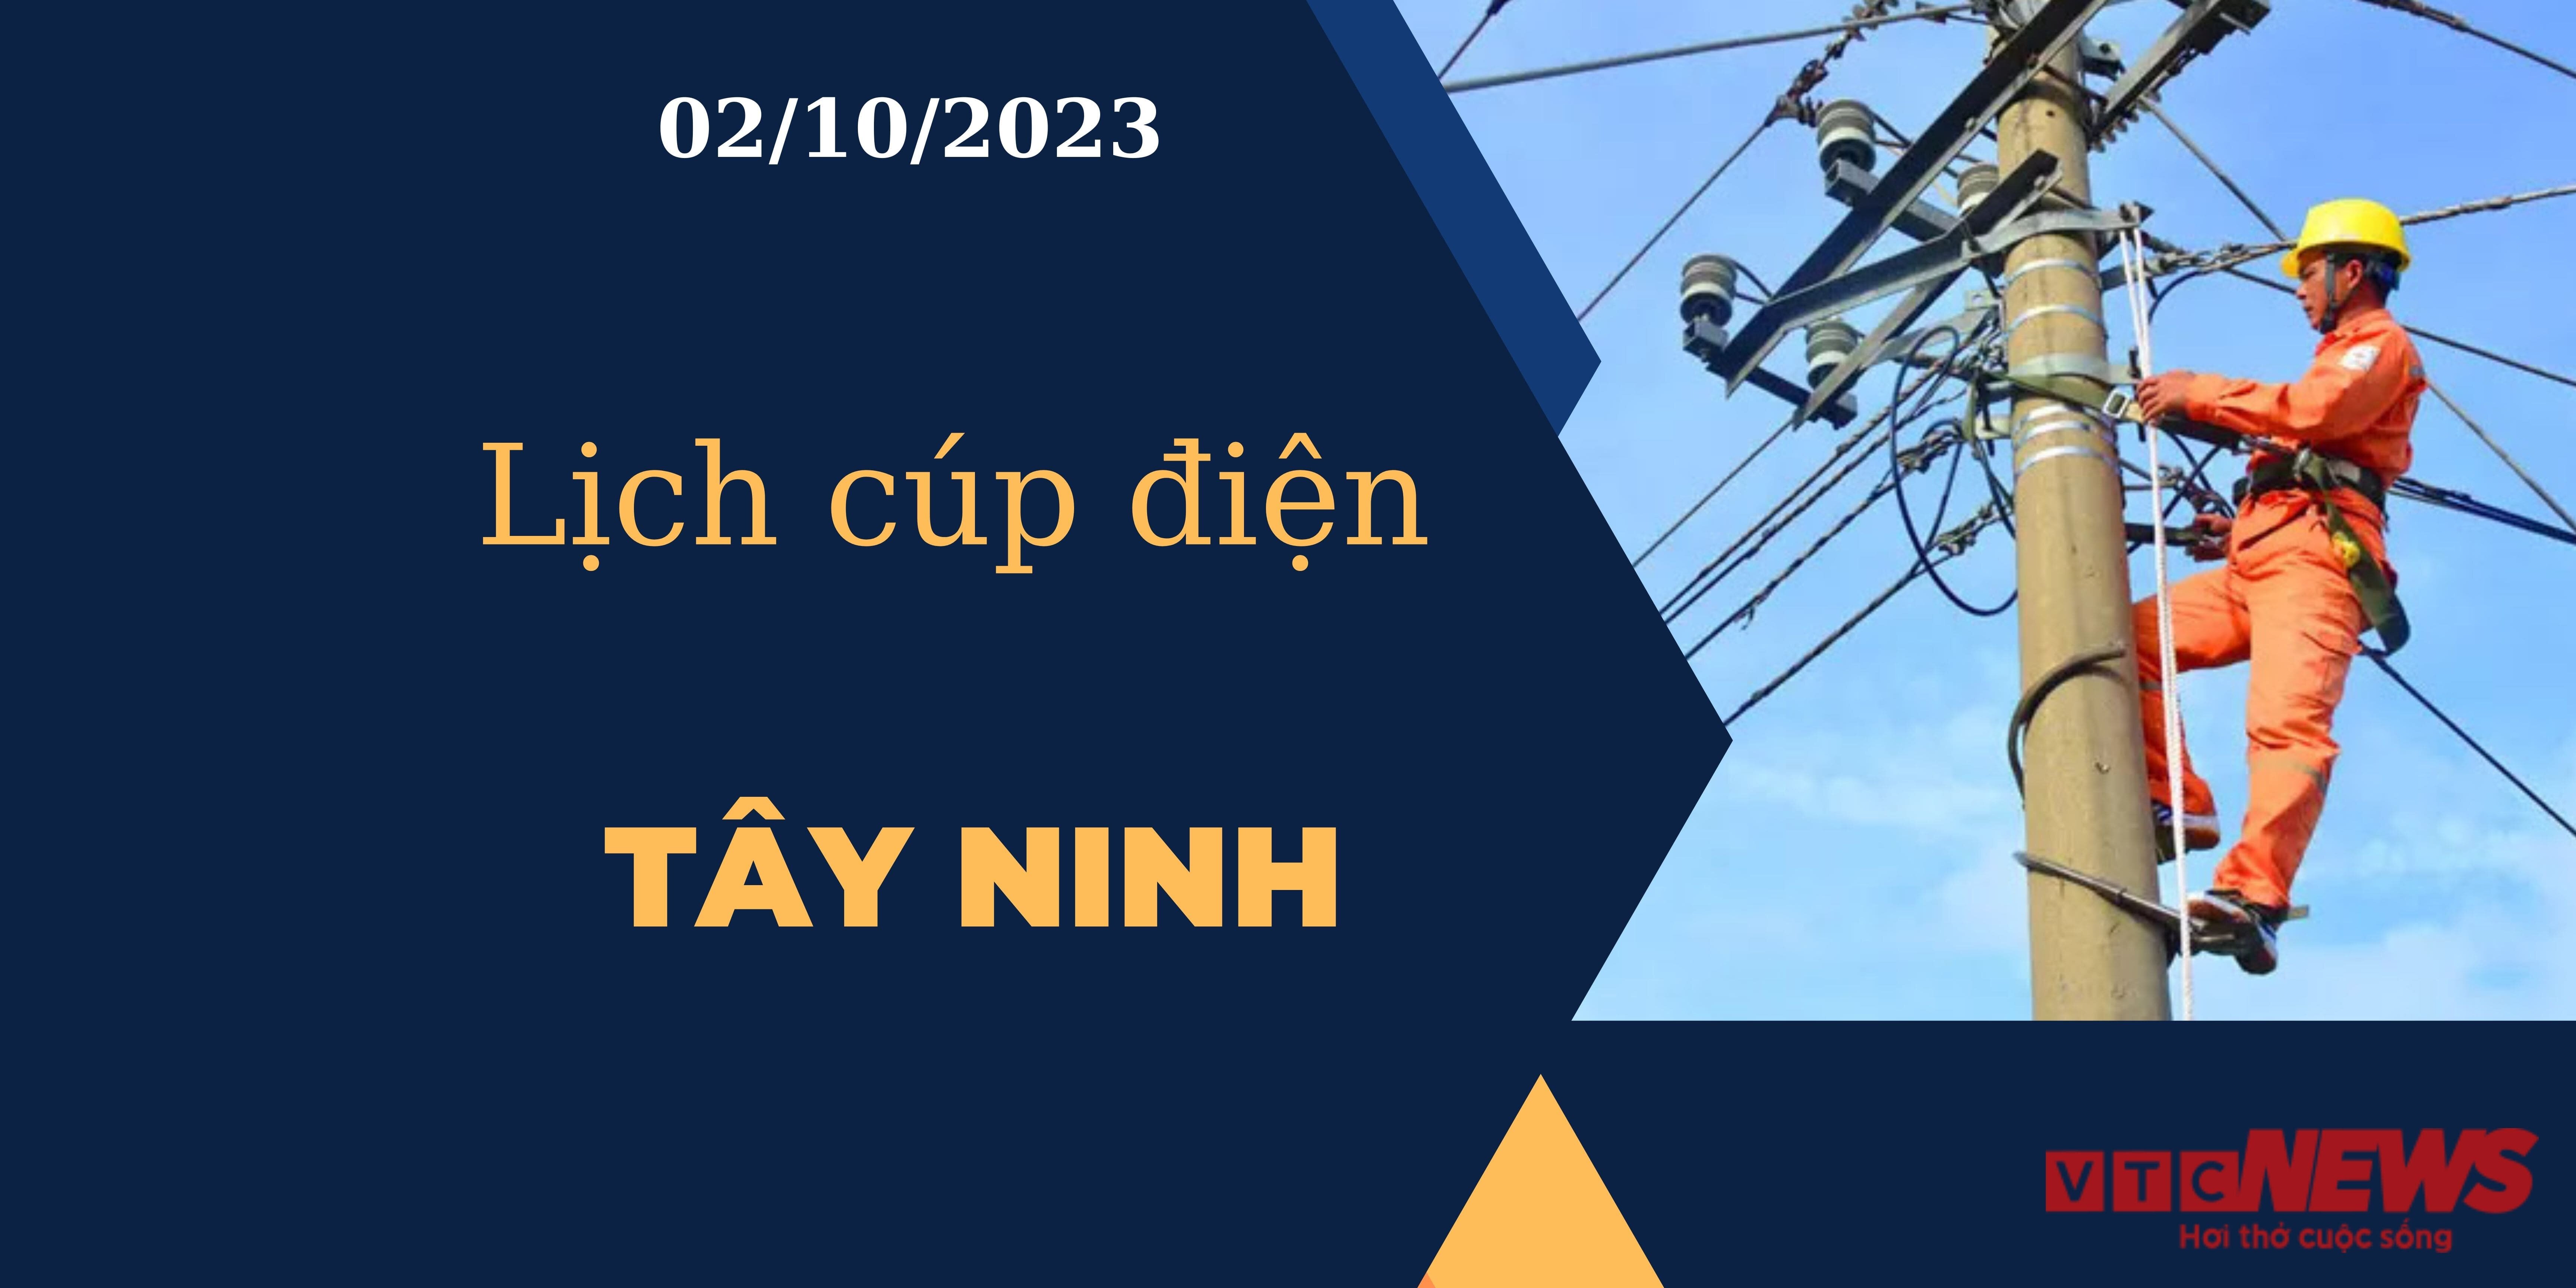 Lịch cúp điện Tây Ninh ngày 02/10/2023.